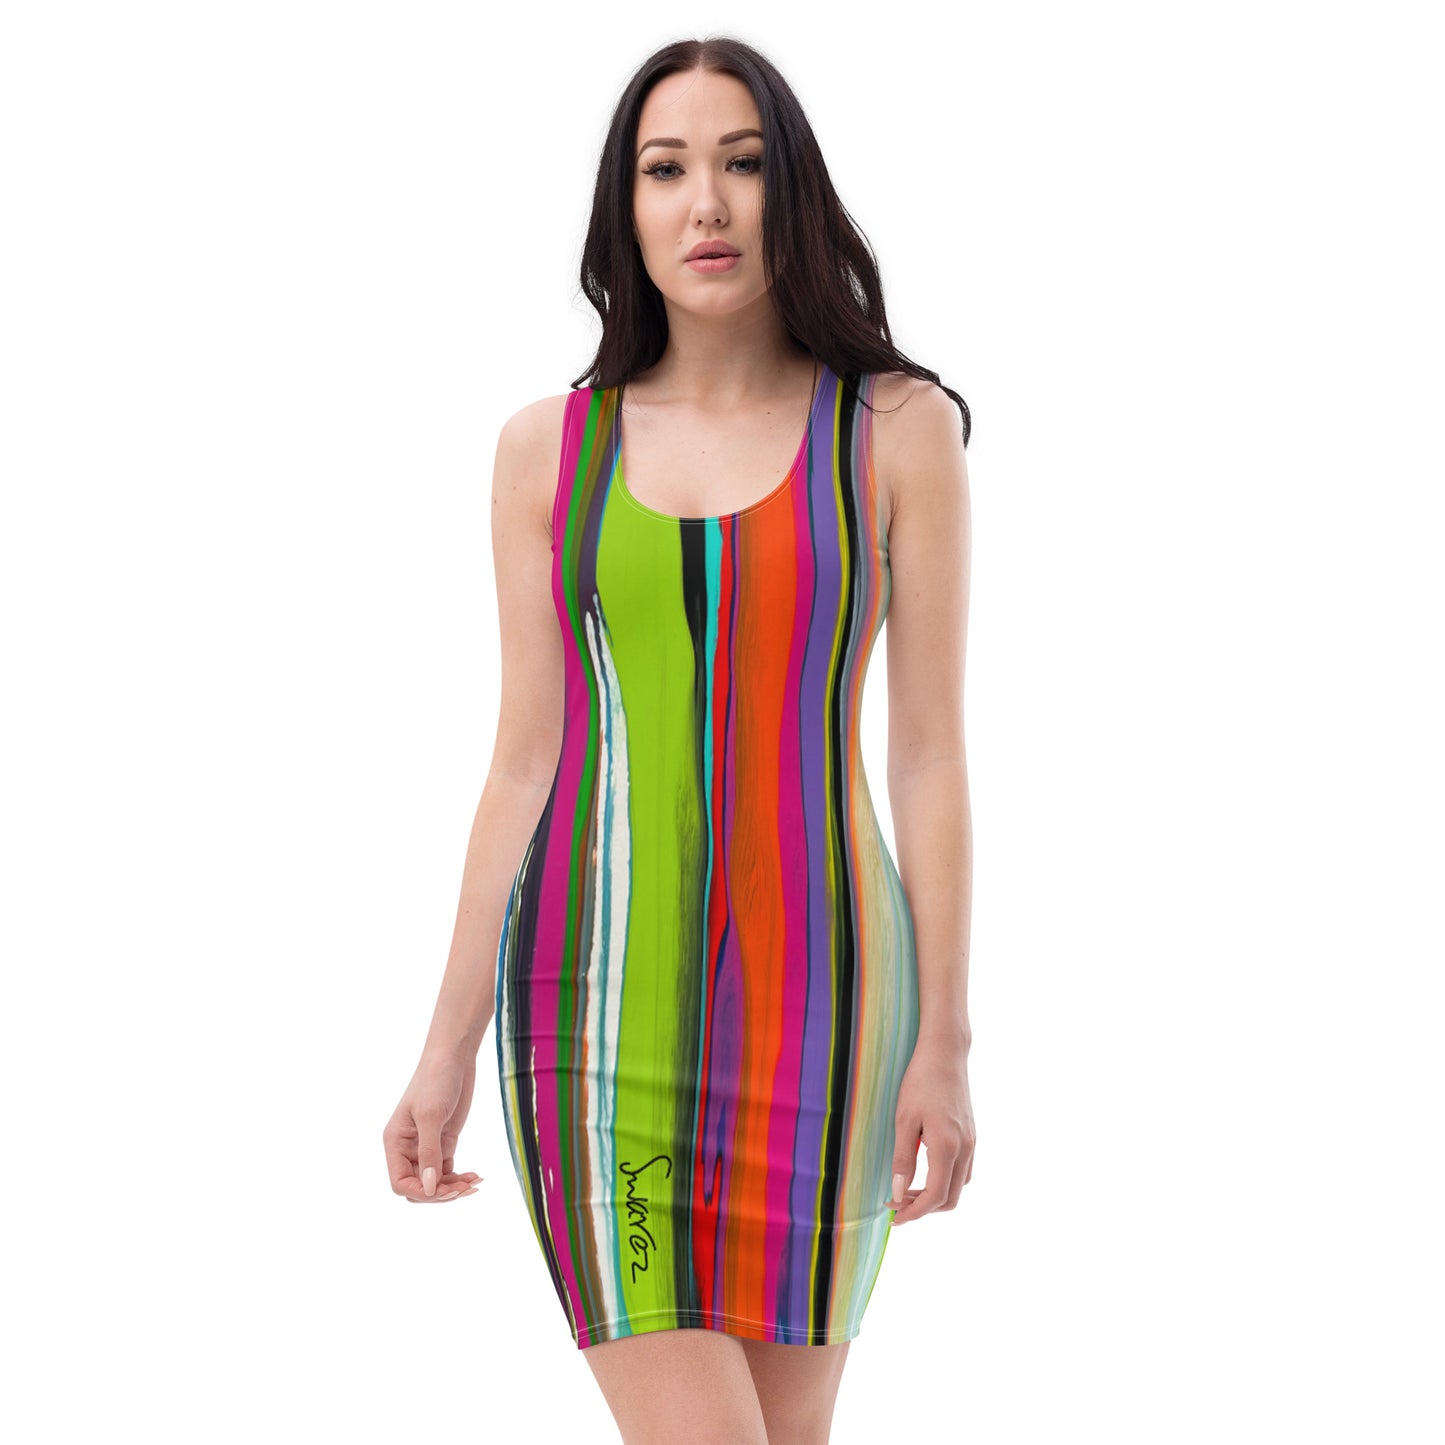 Sublimation Cut & Sew Dress - Vertical stripes design